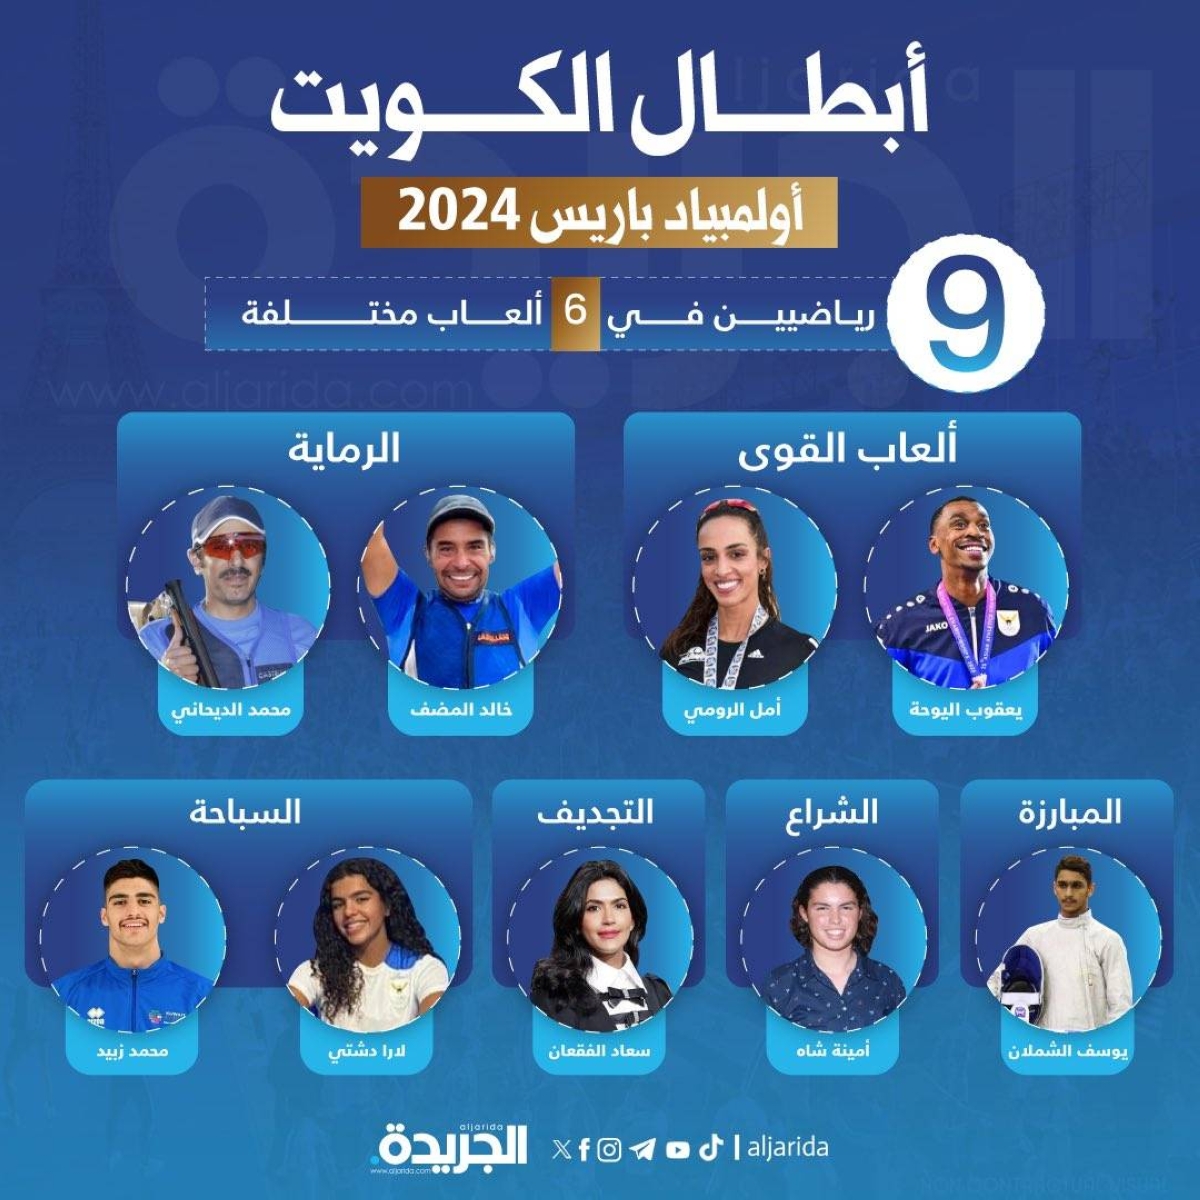 أبطال الكويت في «أولمبياد باريس»: 9 رياضيين في 6 ألعاب